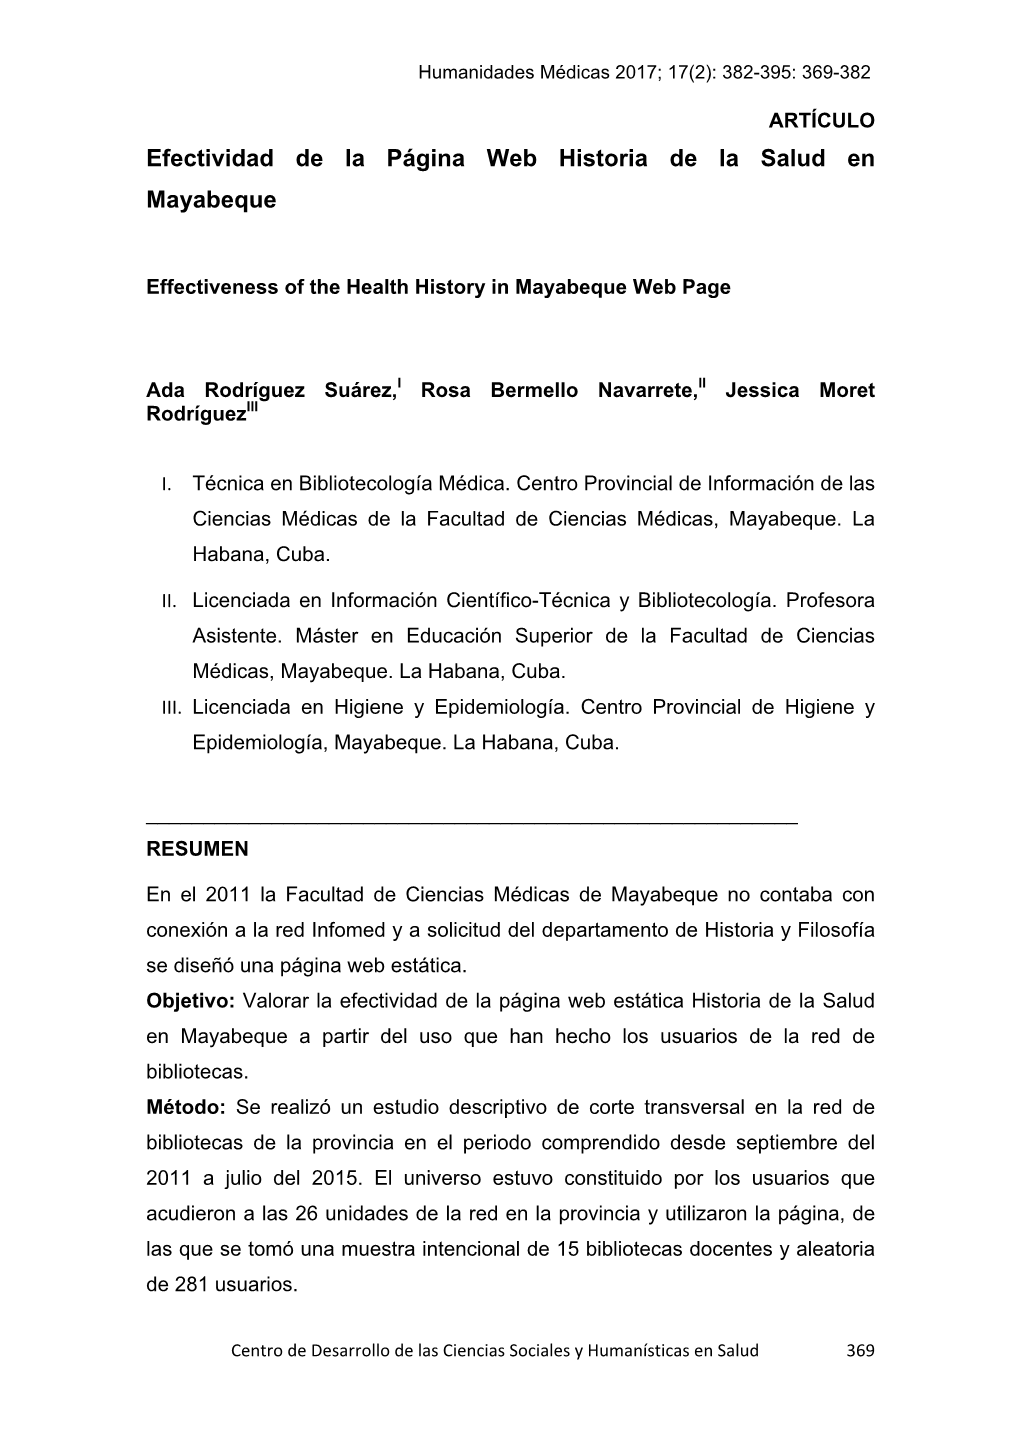 Efectividad De La Página Web Historia De La Salud En Mayabeque